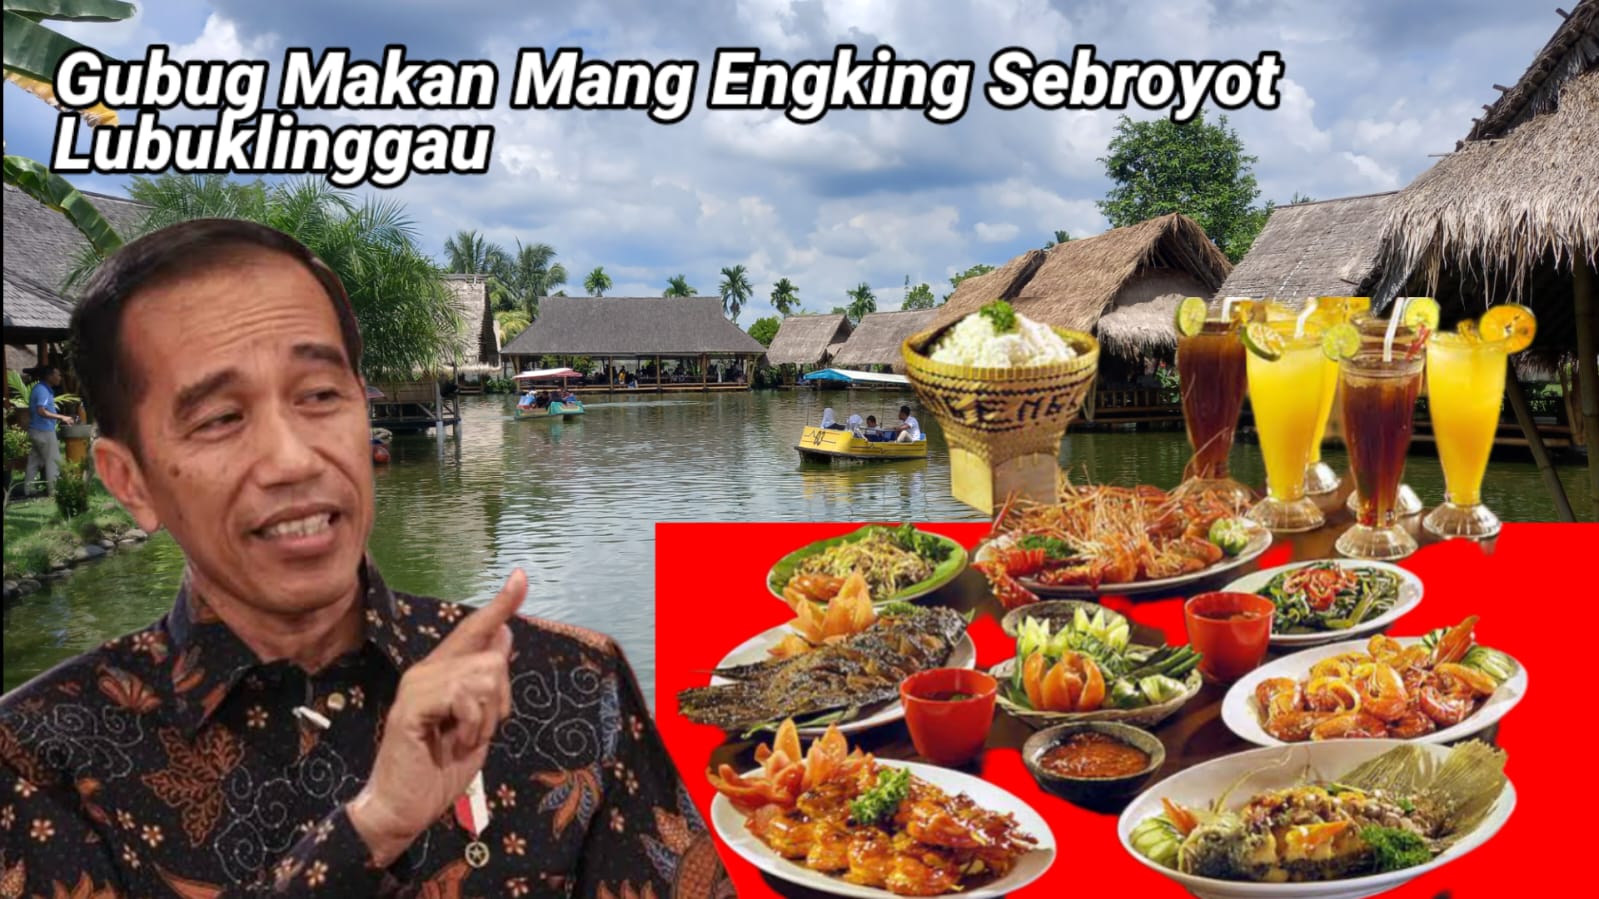 Gubug Makan Mang Engking Sebroyot Lubuklinggau Siapkan Menu Spesial untuk Presiden Jokowi